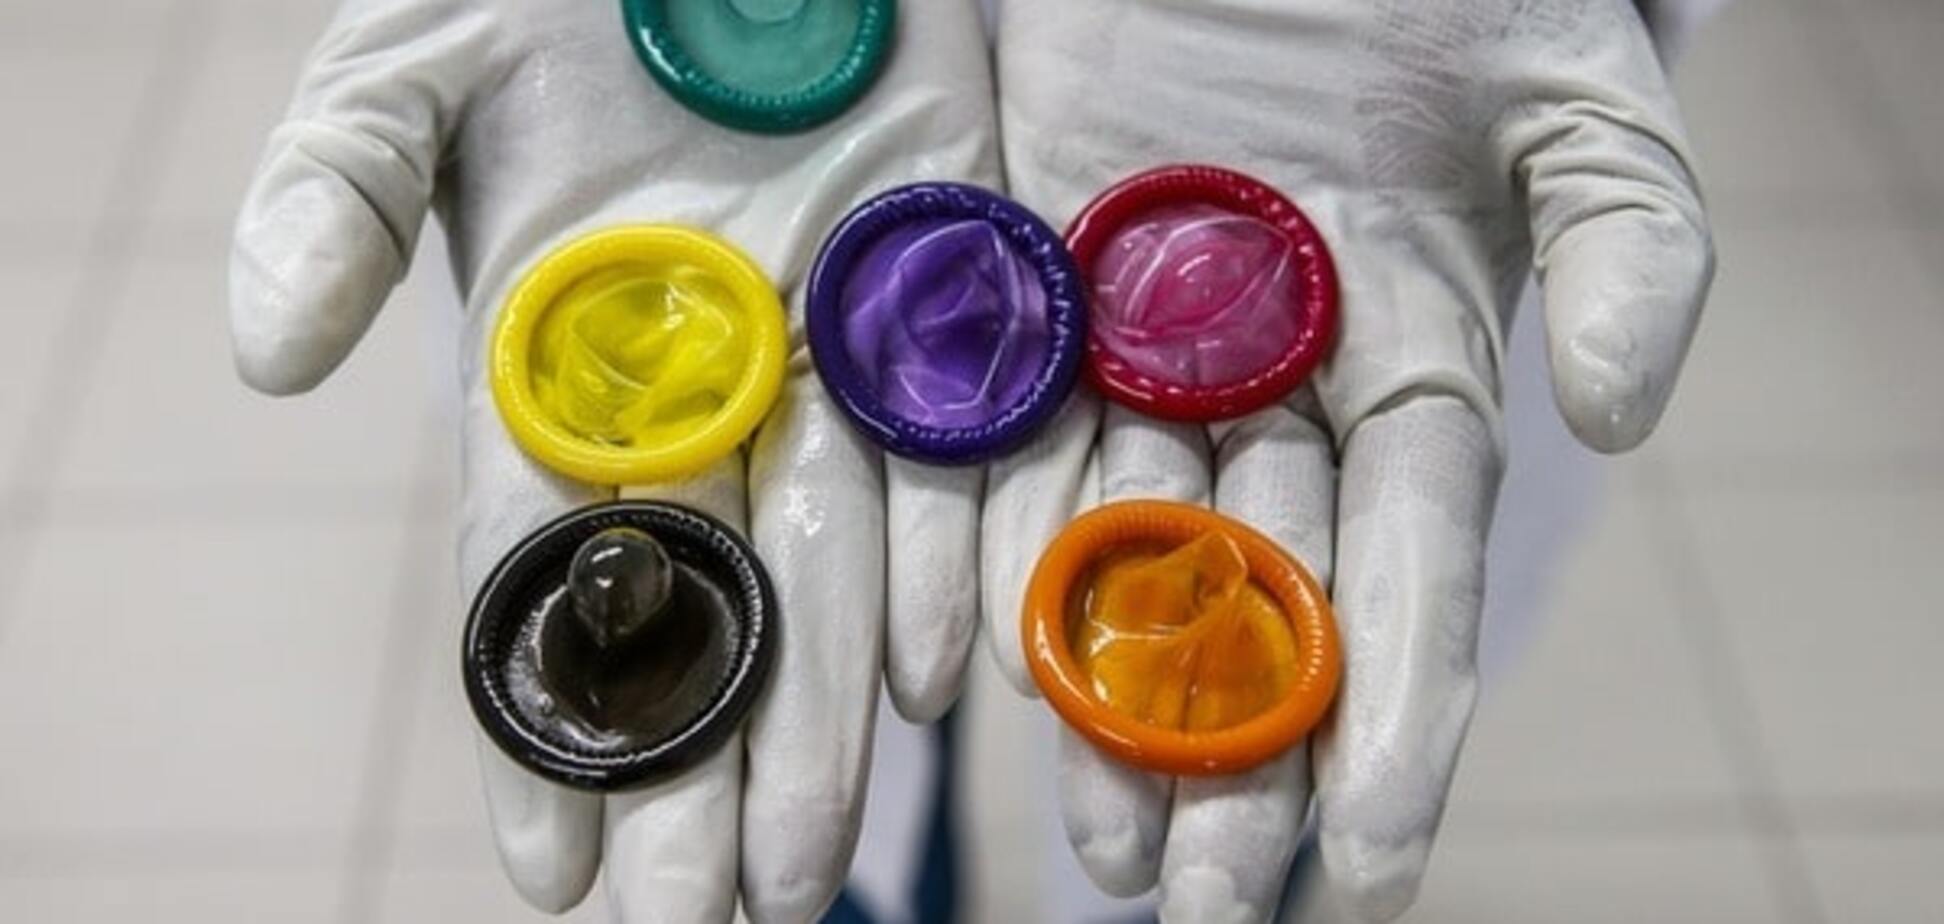 Вещества в детских сосках и презервативах могут вызвать рак - ВОЗ